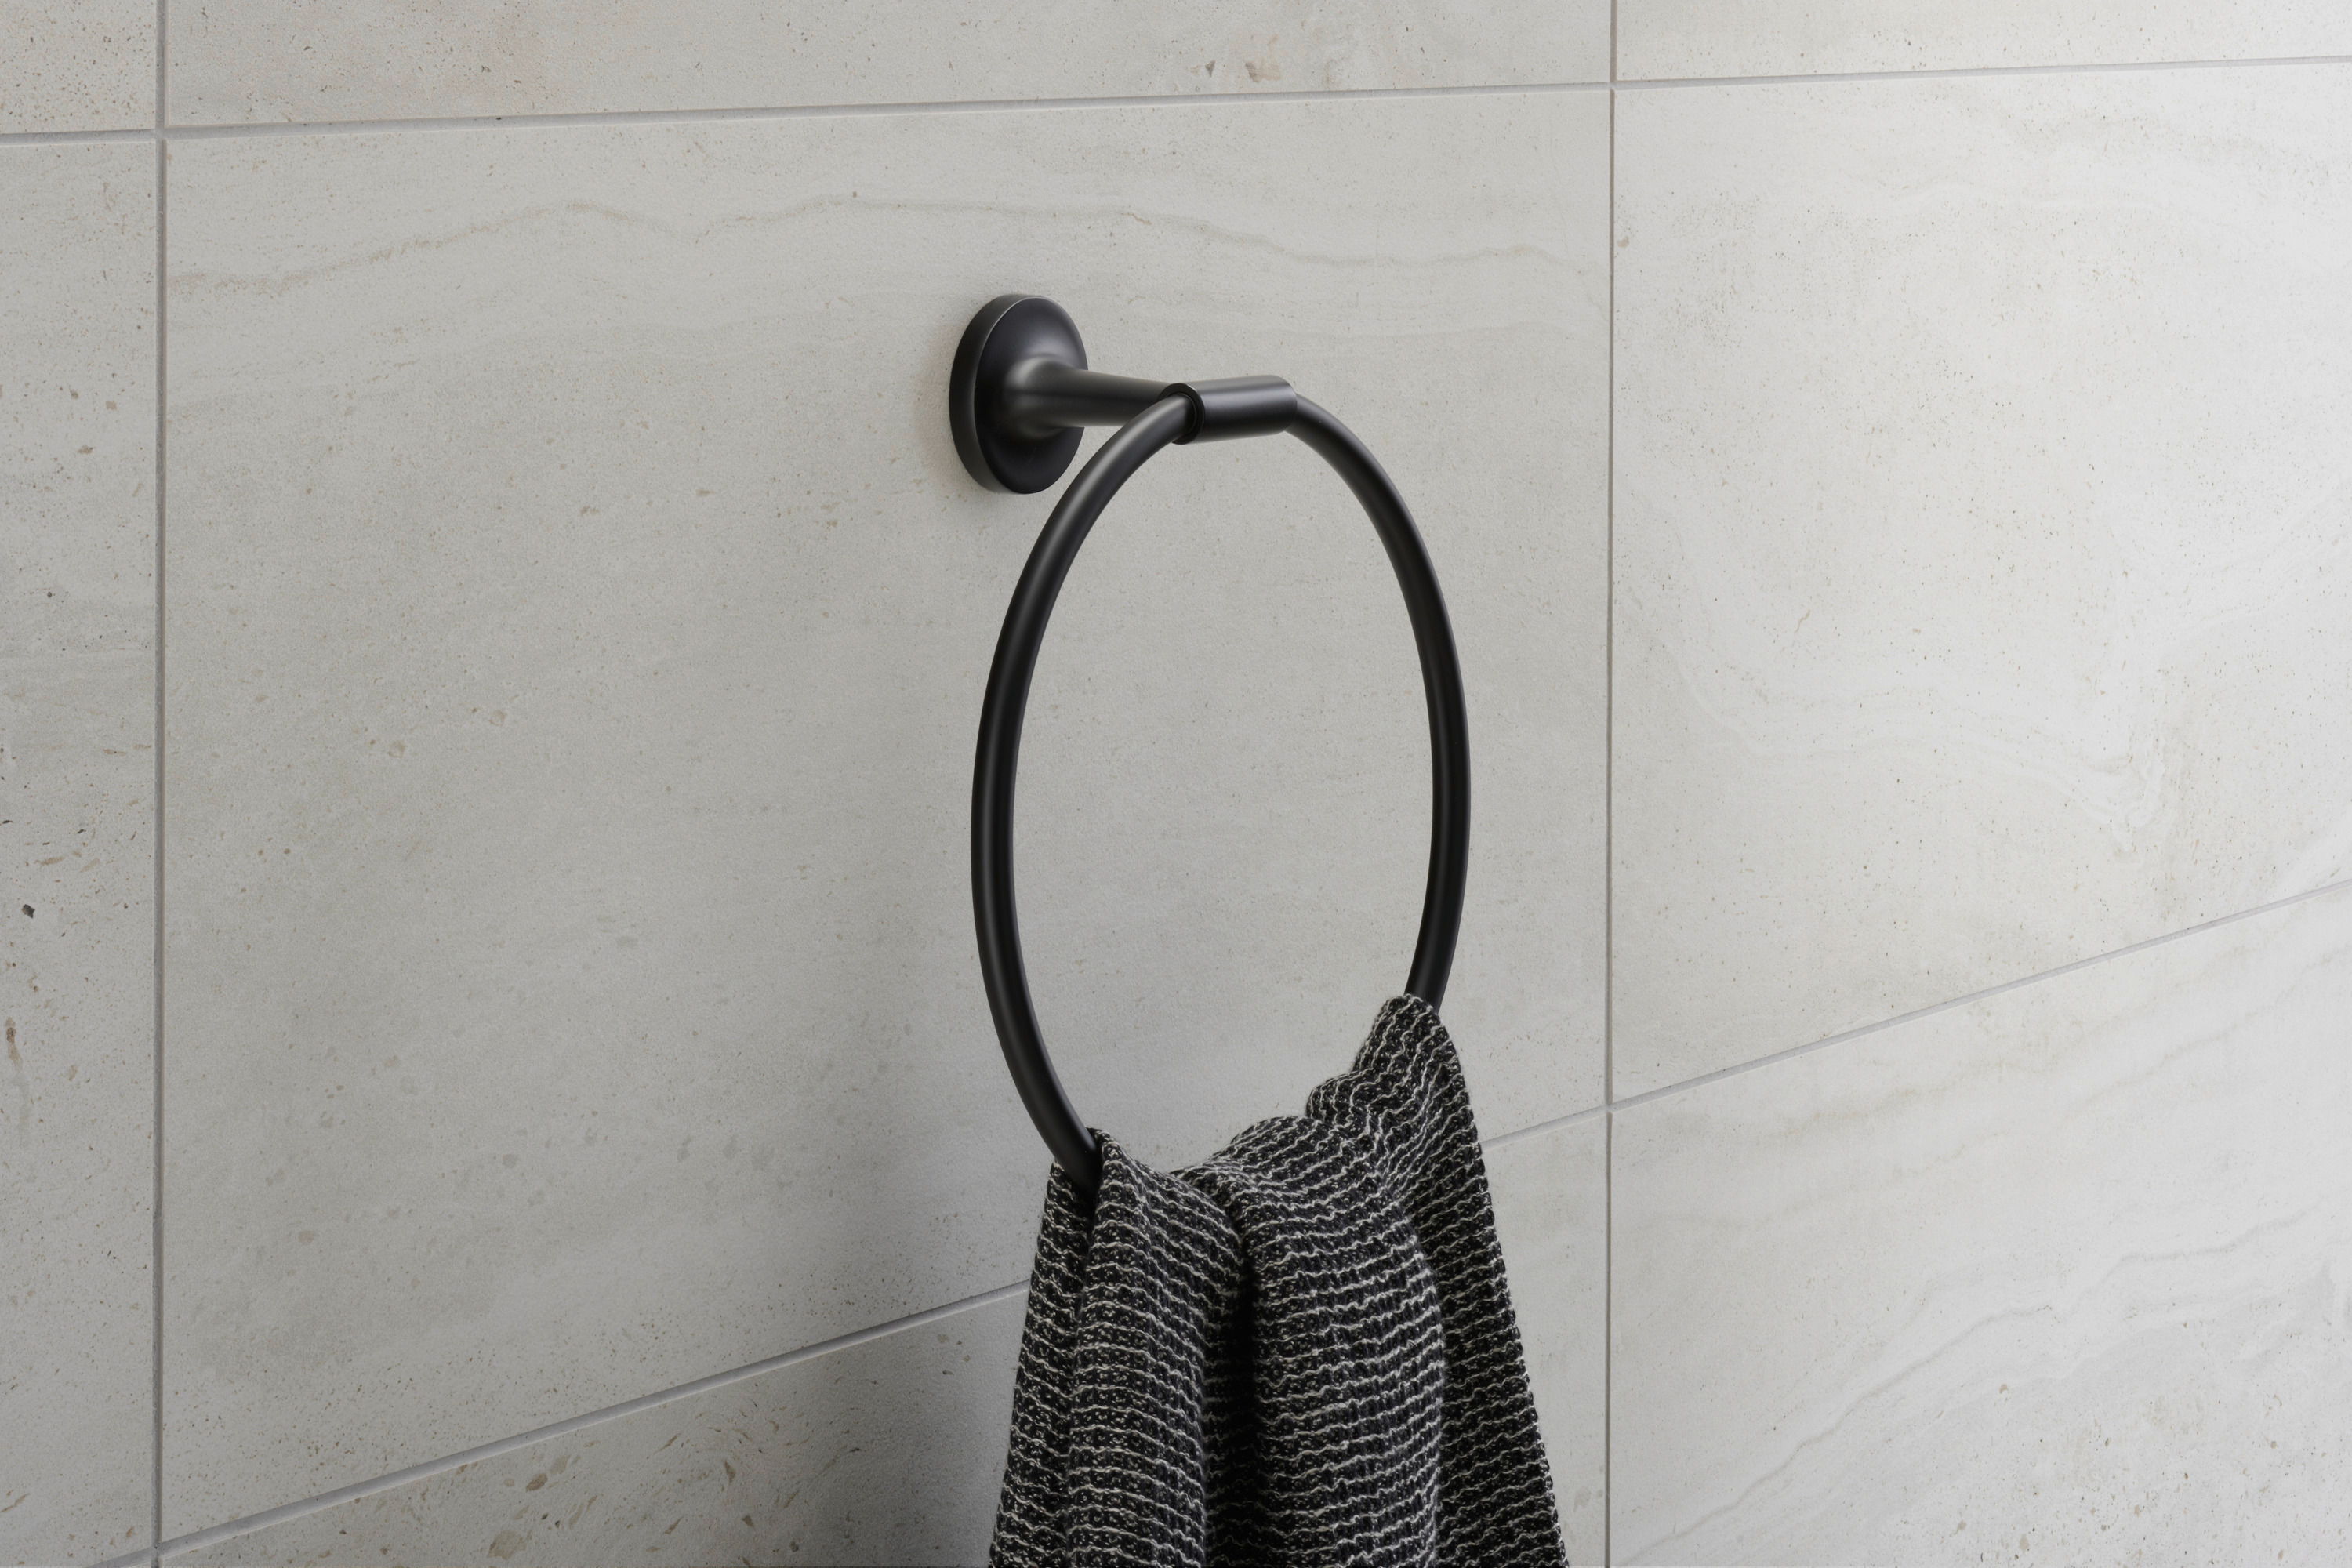 Anneau porte-serviettes en finition Noir mat moderne, « Starck T », design par Philippe Starck